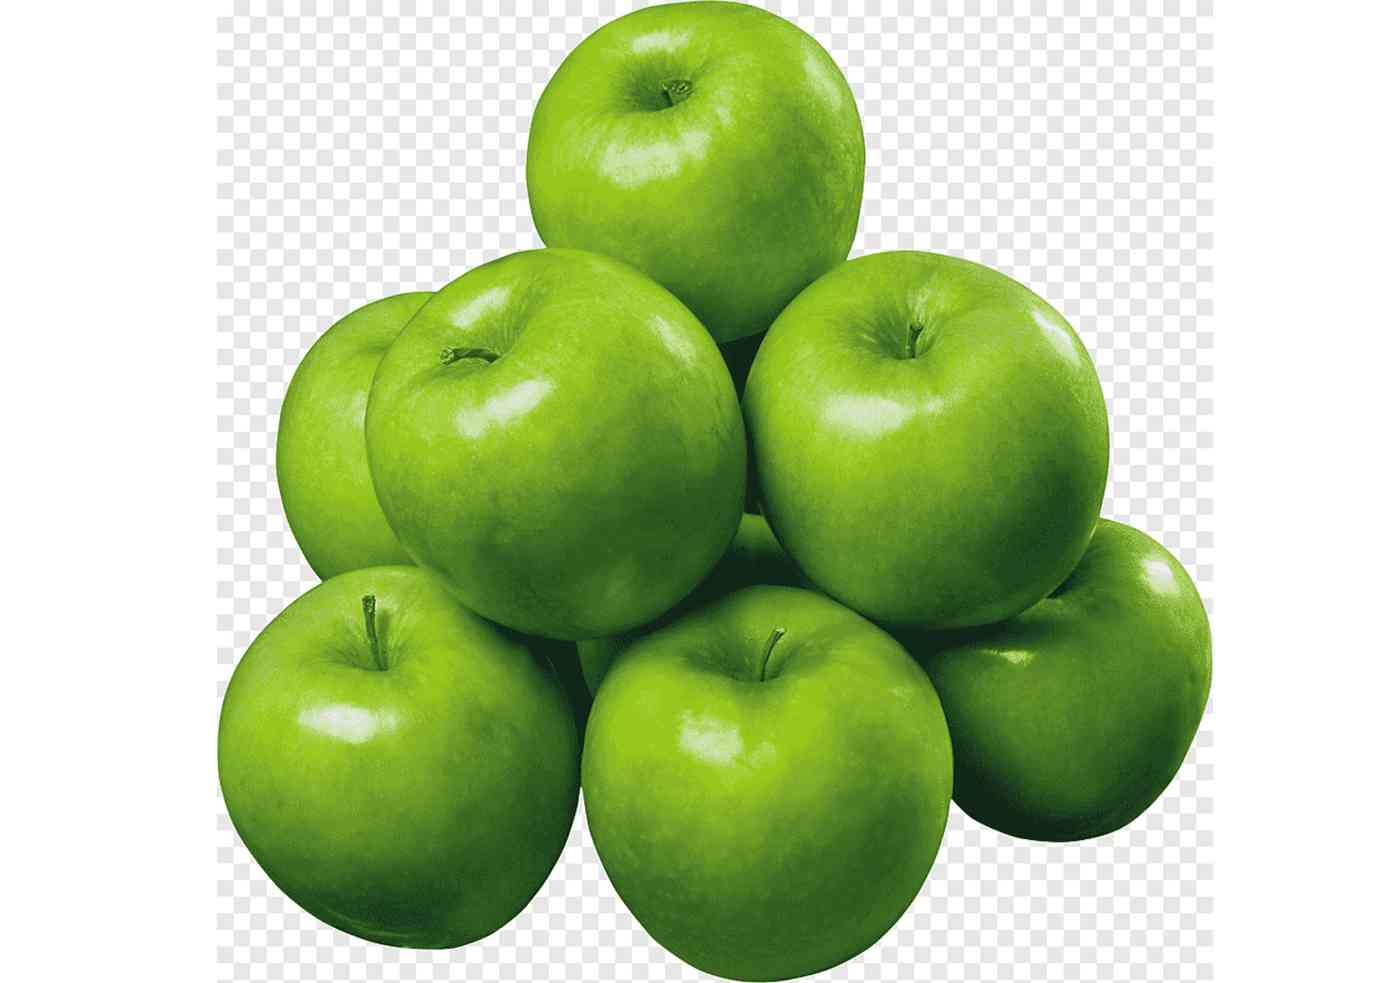 تناول التفاح الأخضر على الريق .. فوائد خيالية البيان الصحي حياة